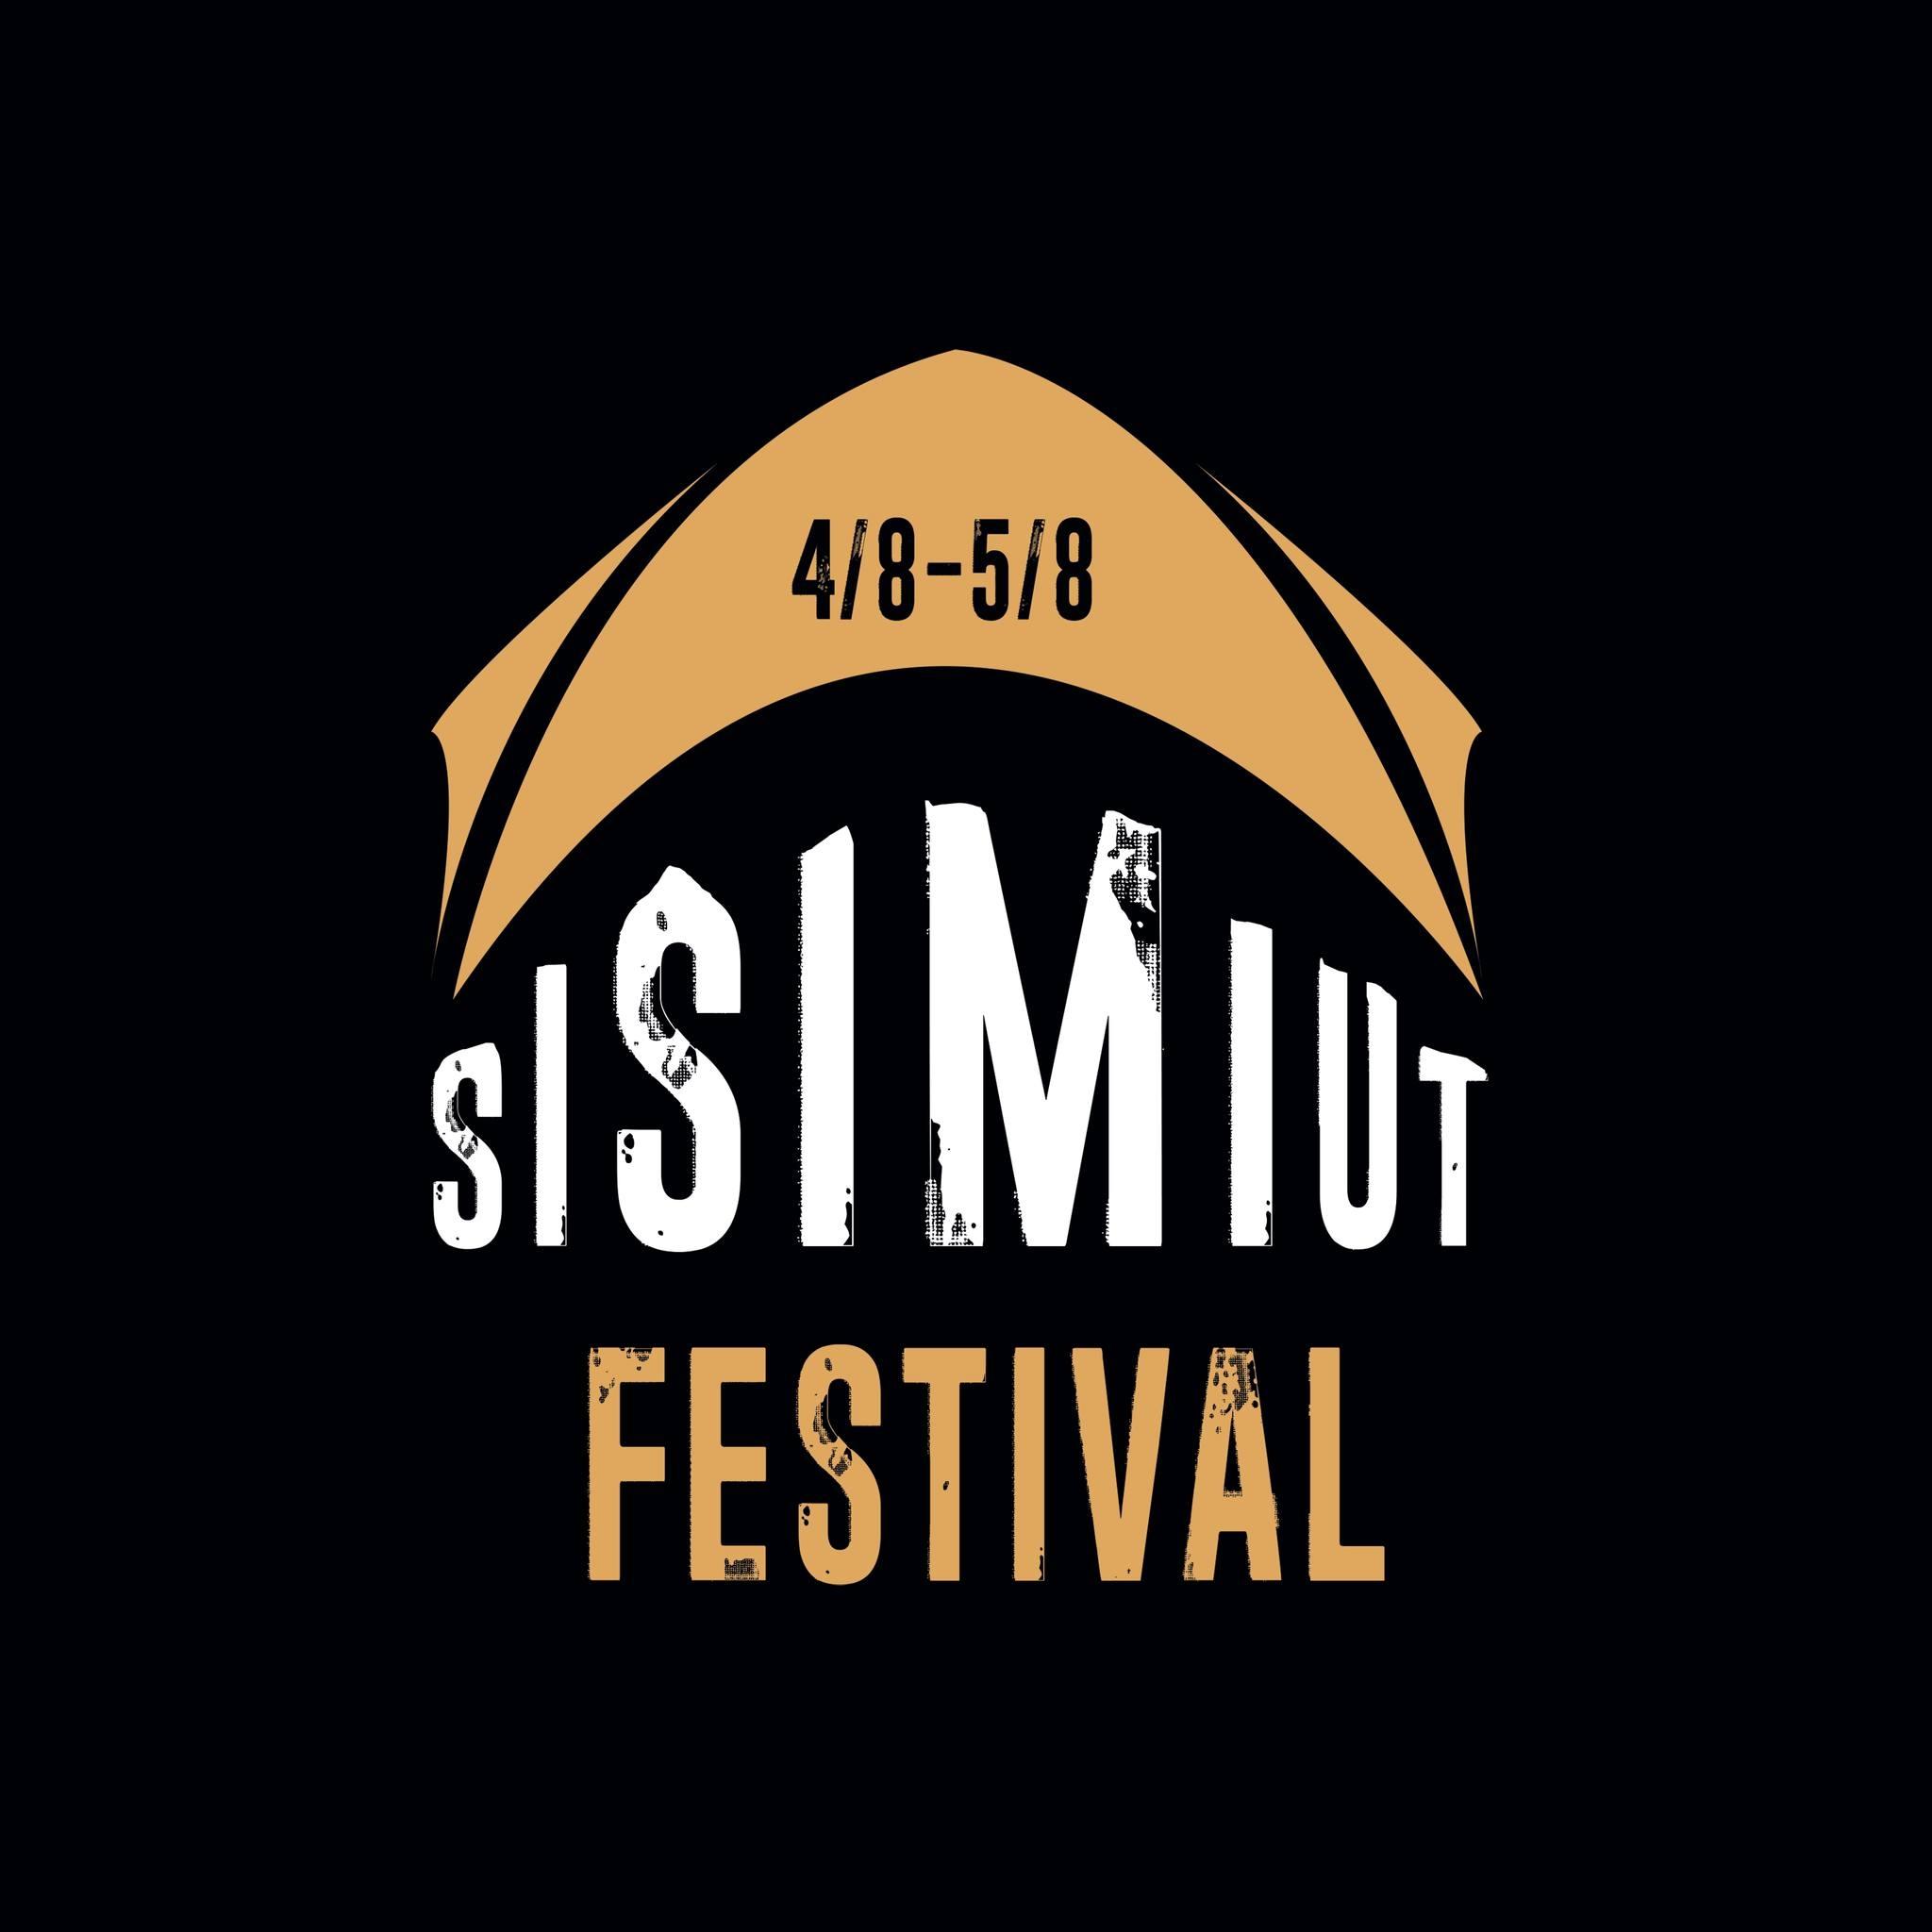 Sisimiut festival logo